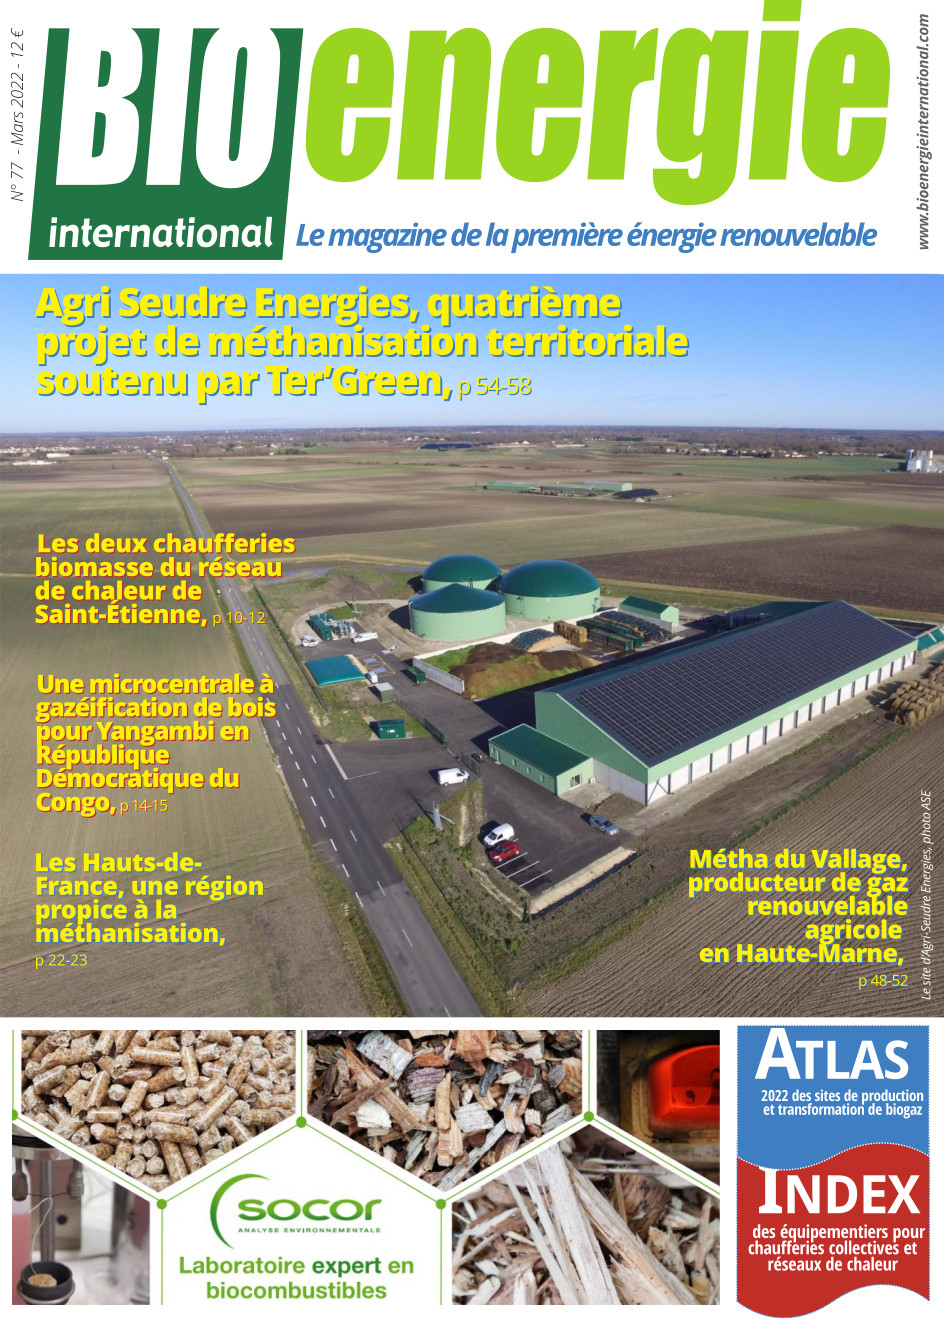 Bioénergie International n°77 – mars 2022